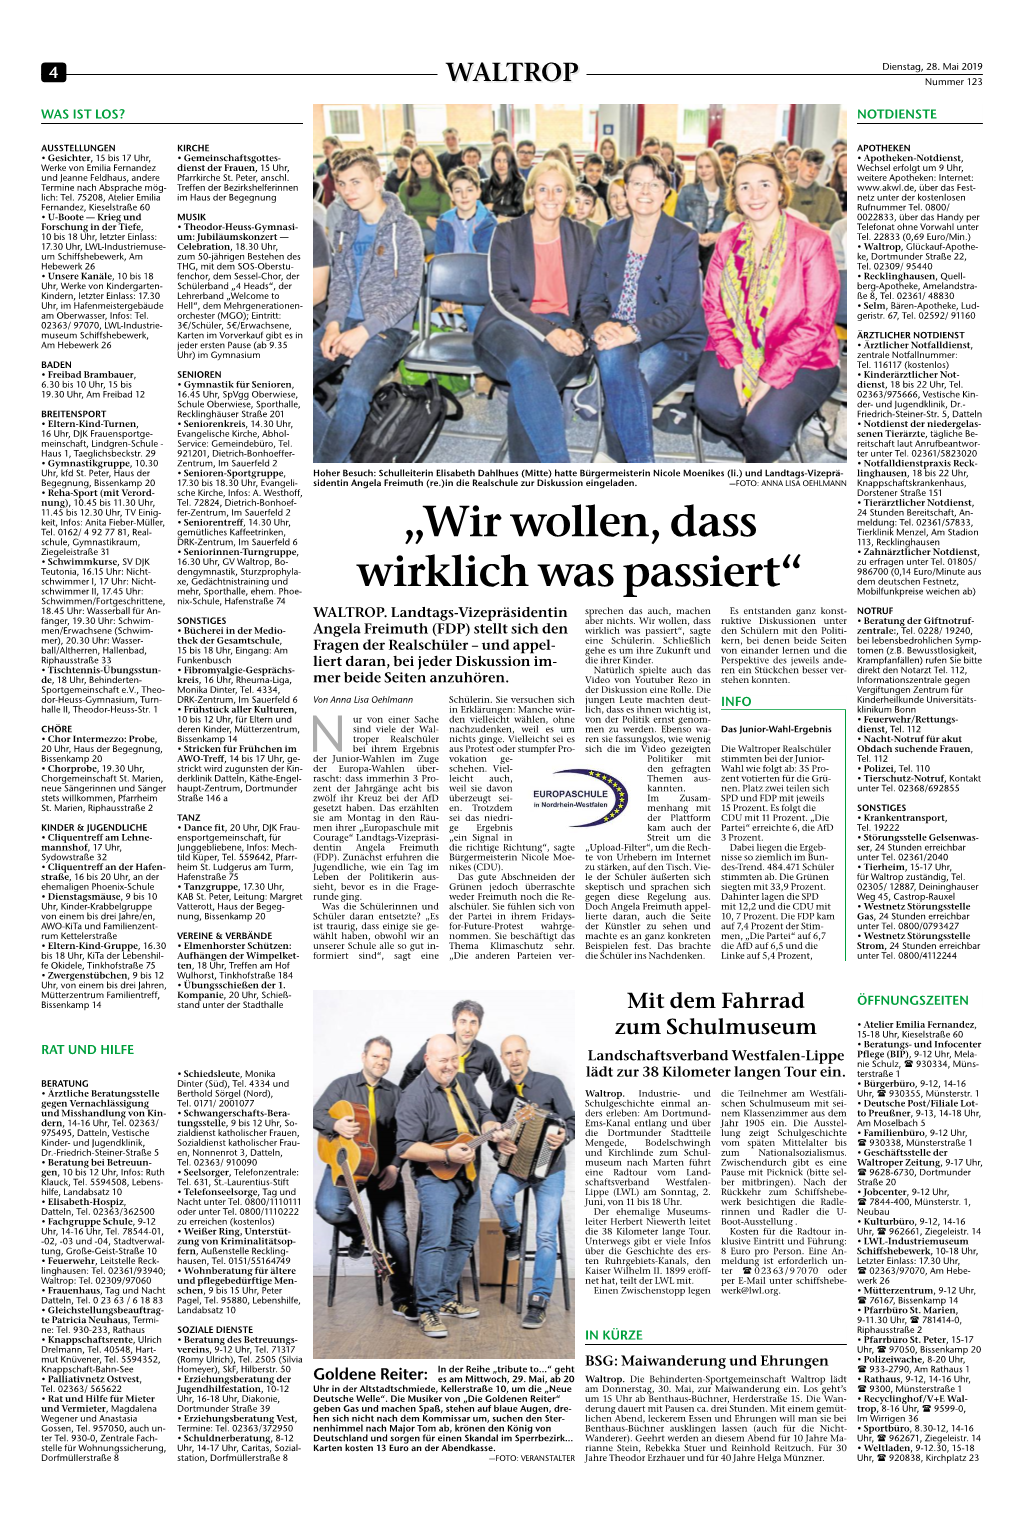 Tageszeitung, Ausgabe: Waltroper Zeitung, Vom: Dienstag, 28. Mai 2019